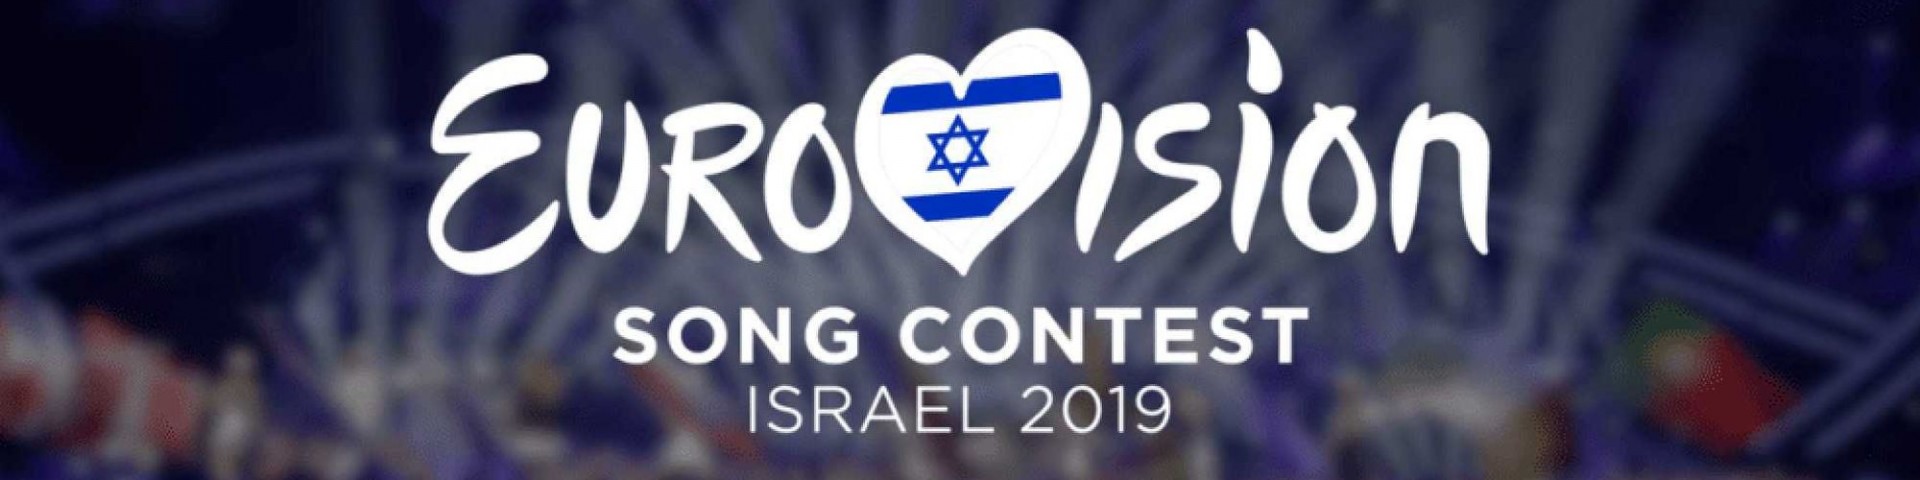 Eurovision Song Contest 2019: le pagelle in attesa della prima semifinale